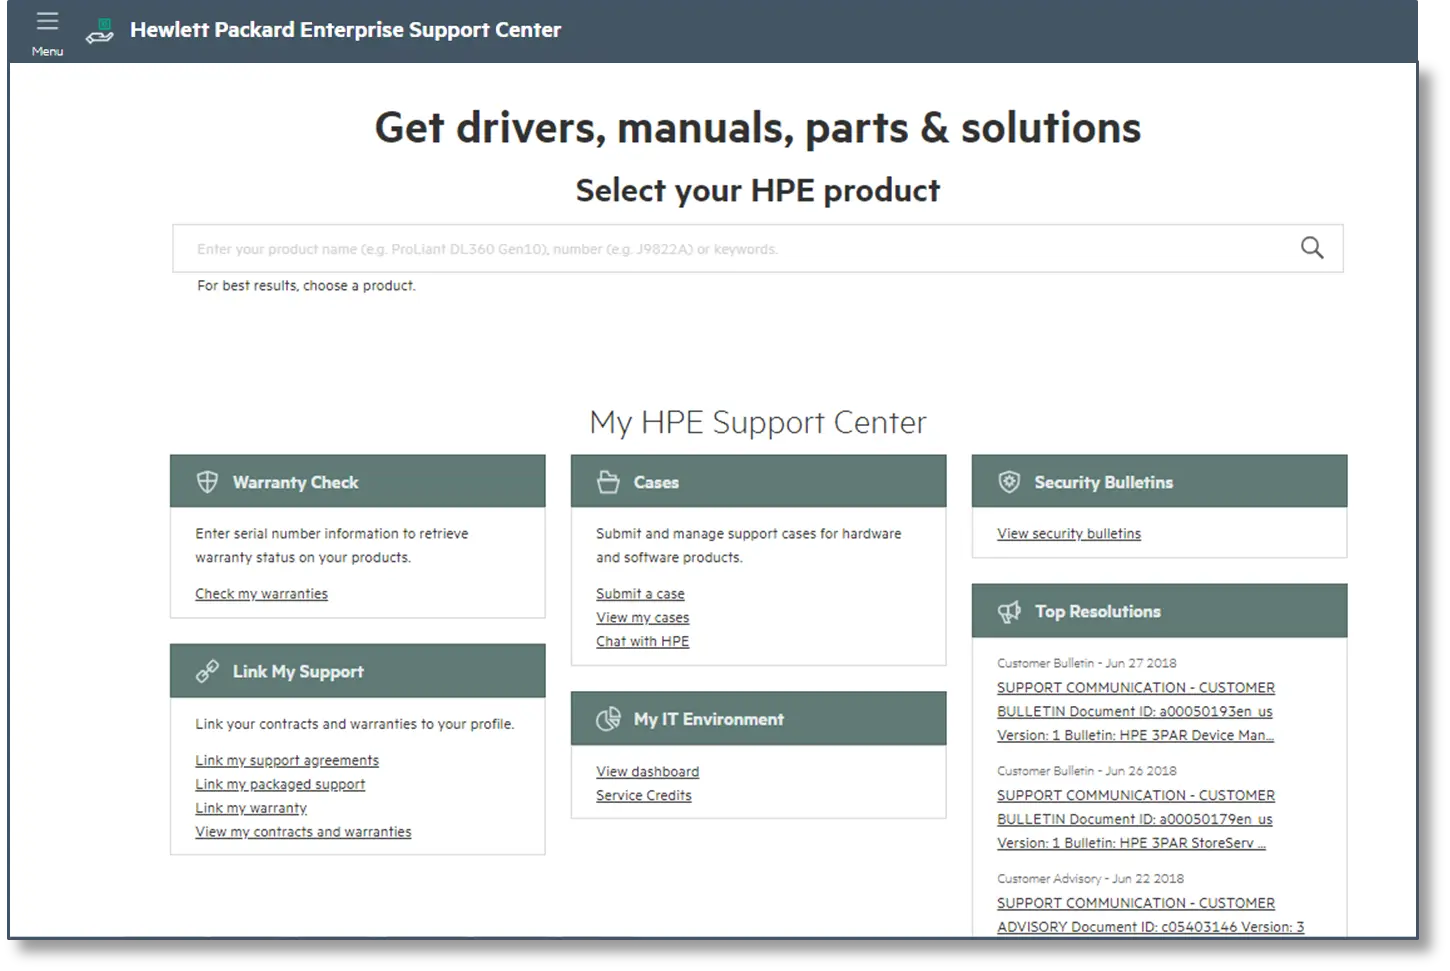 hewlett packard enterprise support - How do I contact Hewlett Packard Enterprise